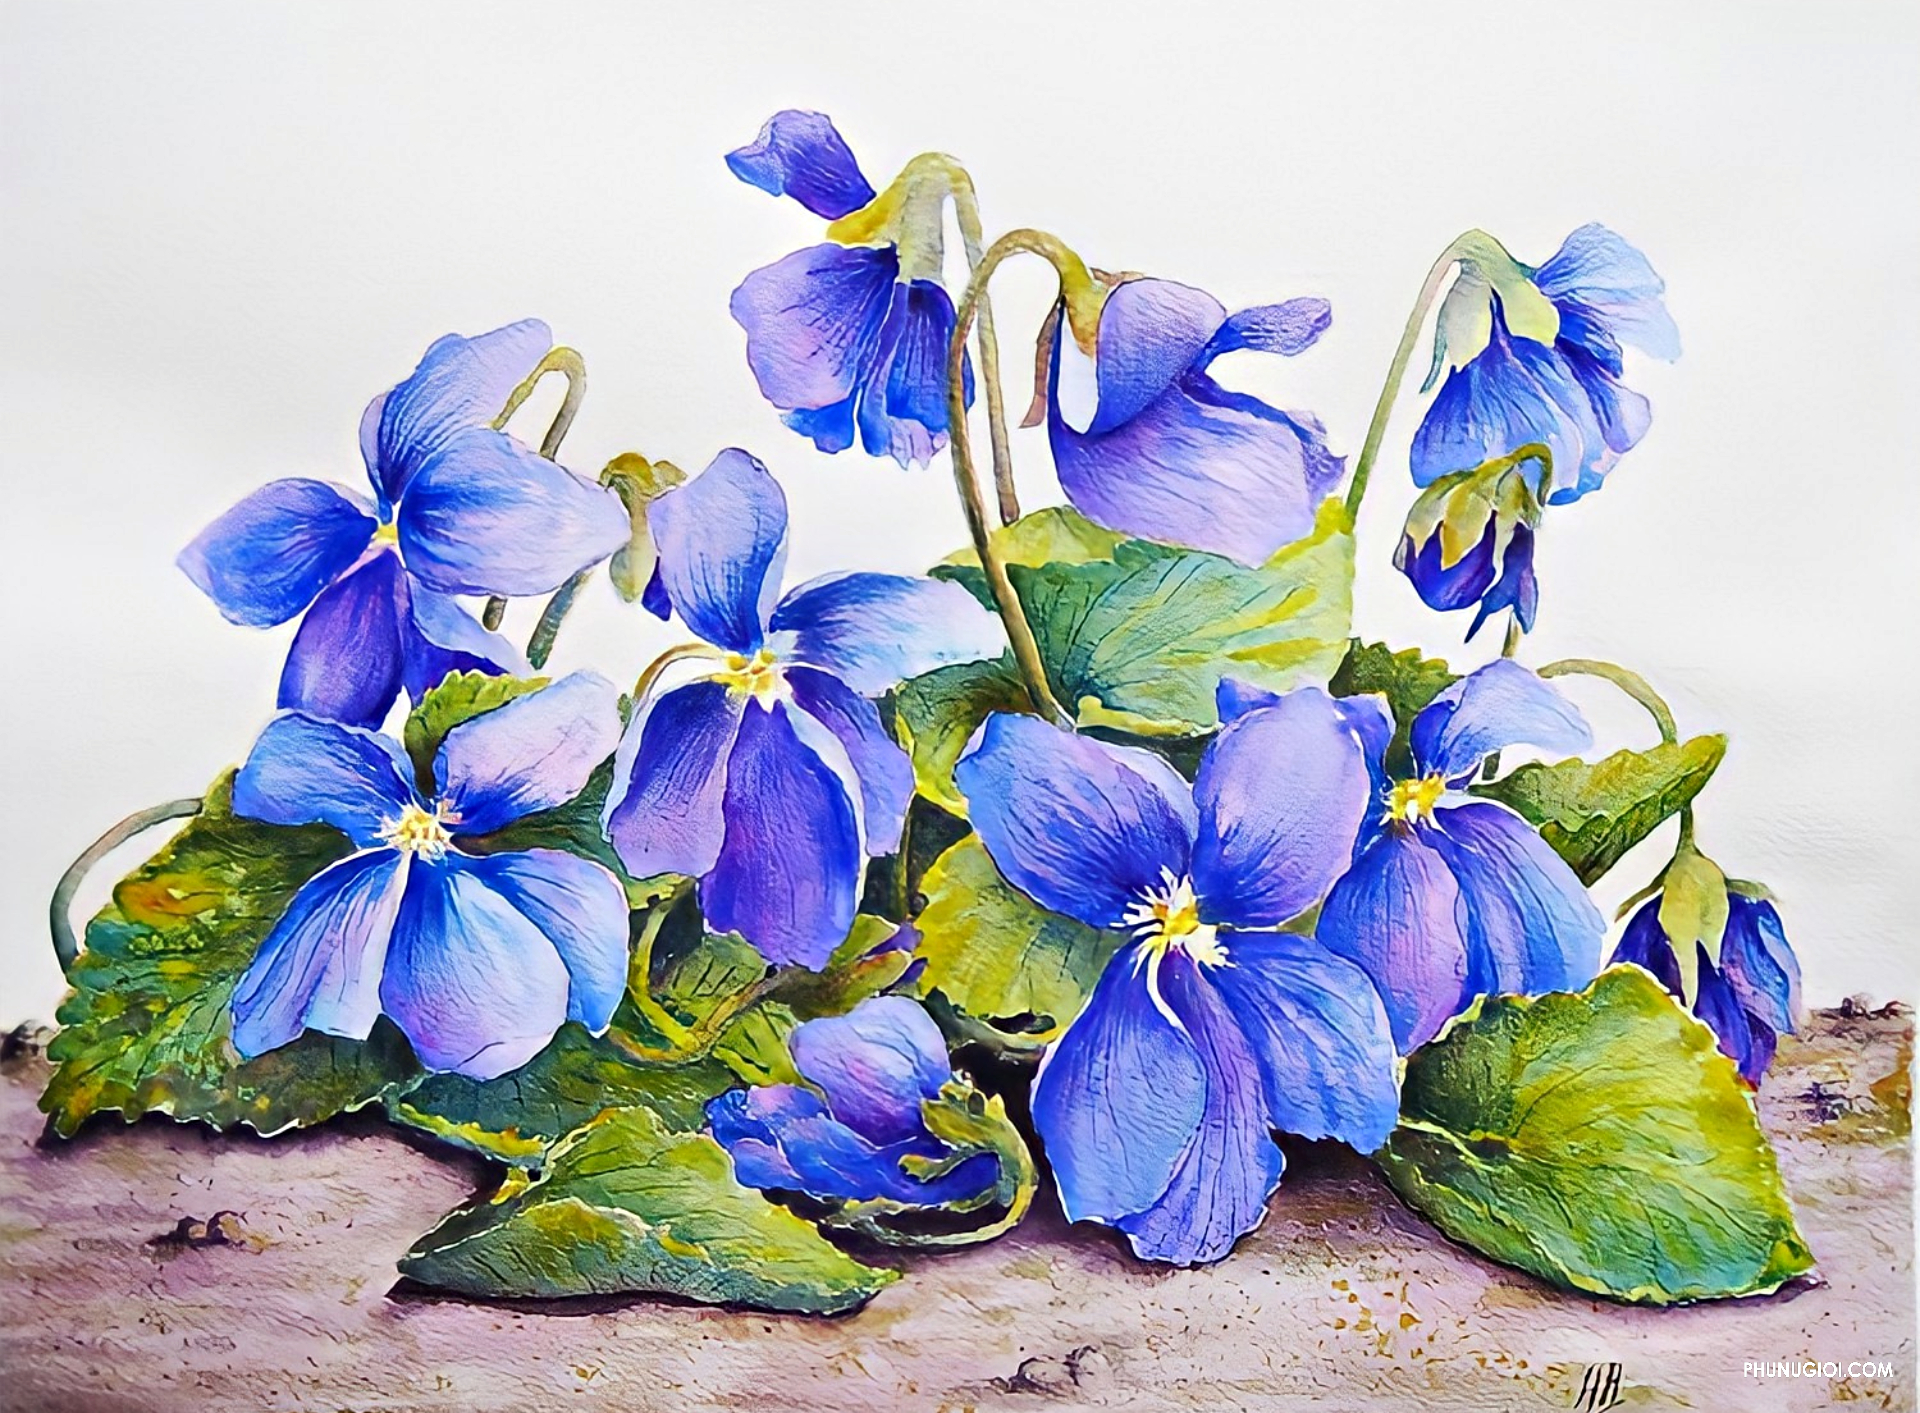 Vẽ hoa Violet là một hình thức nghệ thuật tuyệt vời để thể hiện cảm xúc và thực hiện những ước mơ của mình. Hãy xem những bức tranh về hoa Violet và hưởng thụ sự sáng tạo của các nghệ sĩ.